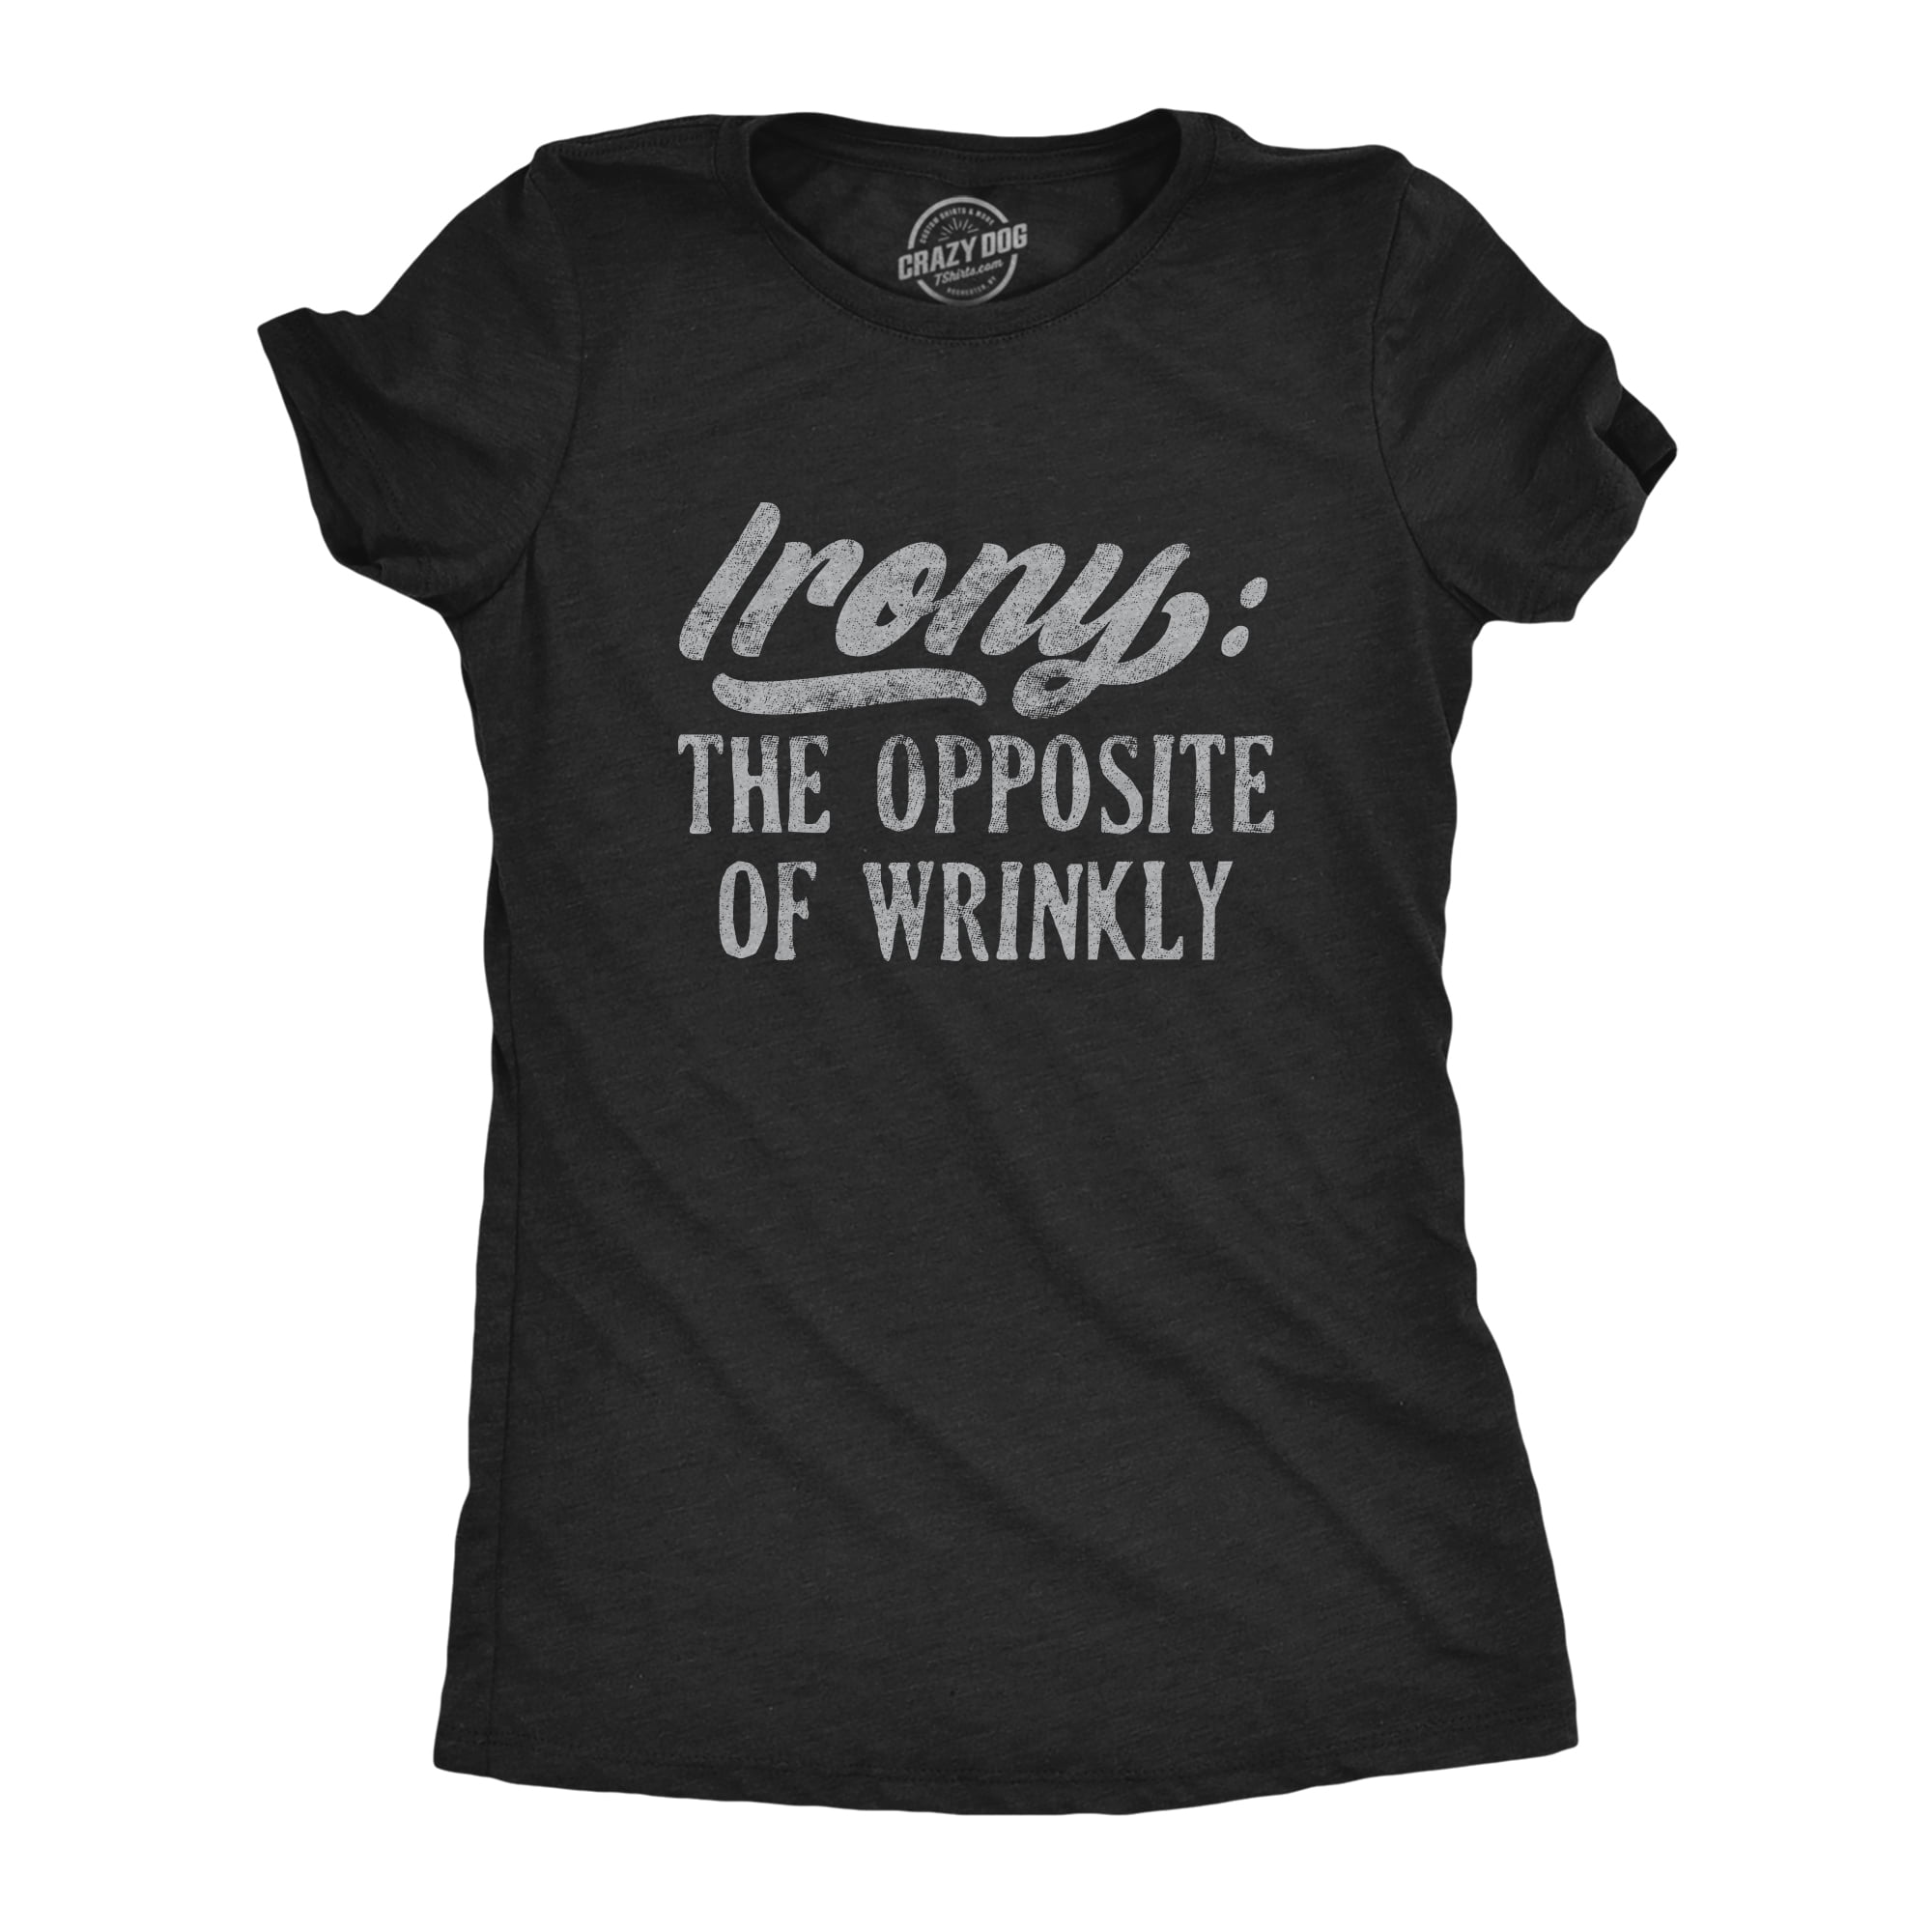 Irony Opposite Of Wrinkly Women's V-Neck T-Shirt Funny Novelty Gift